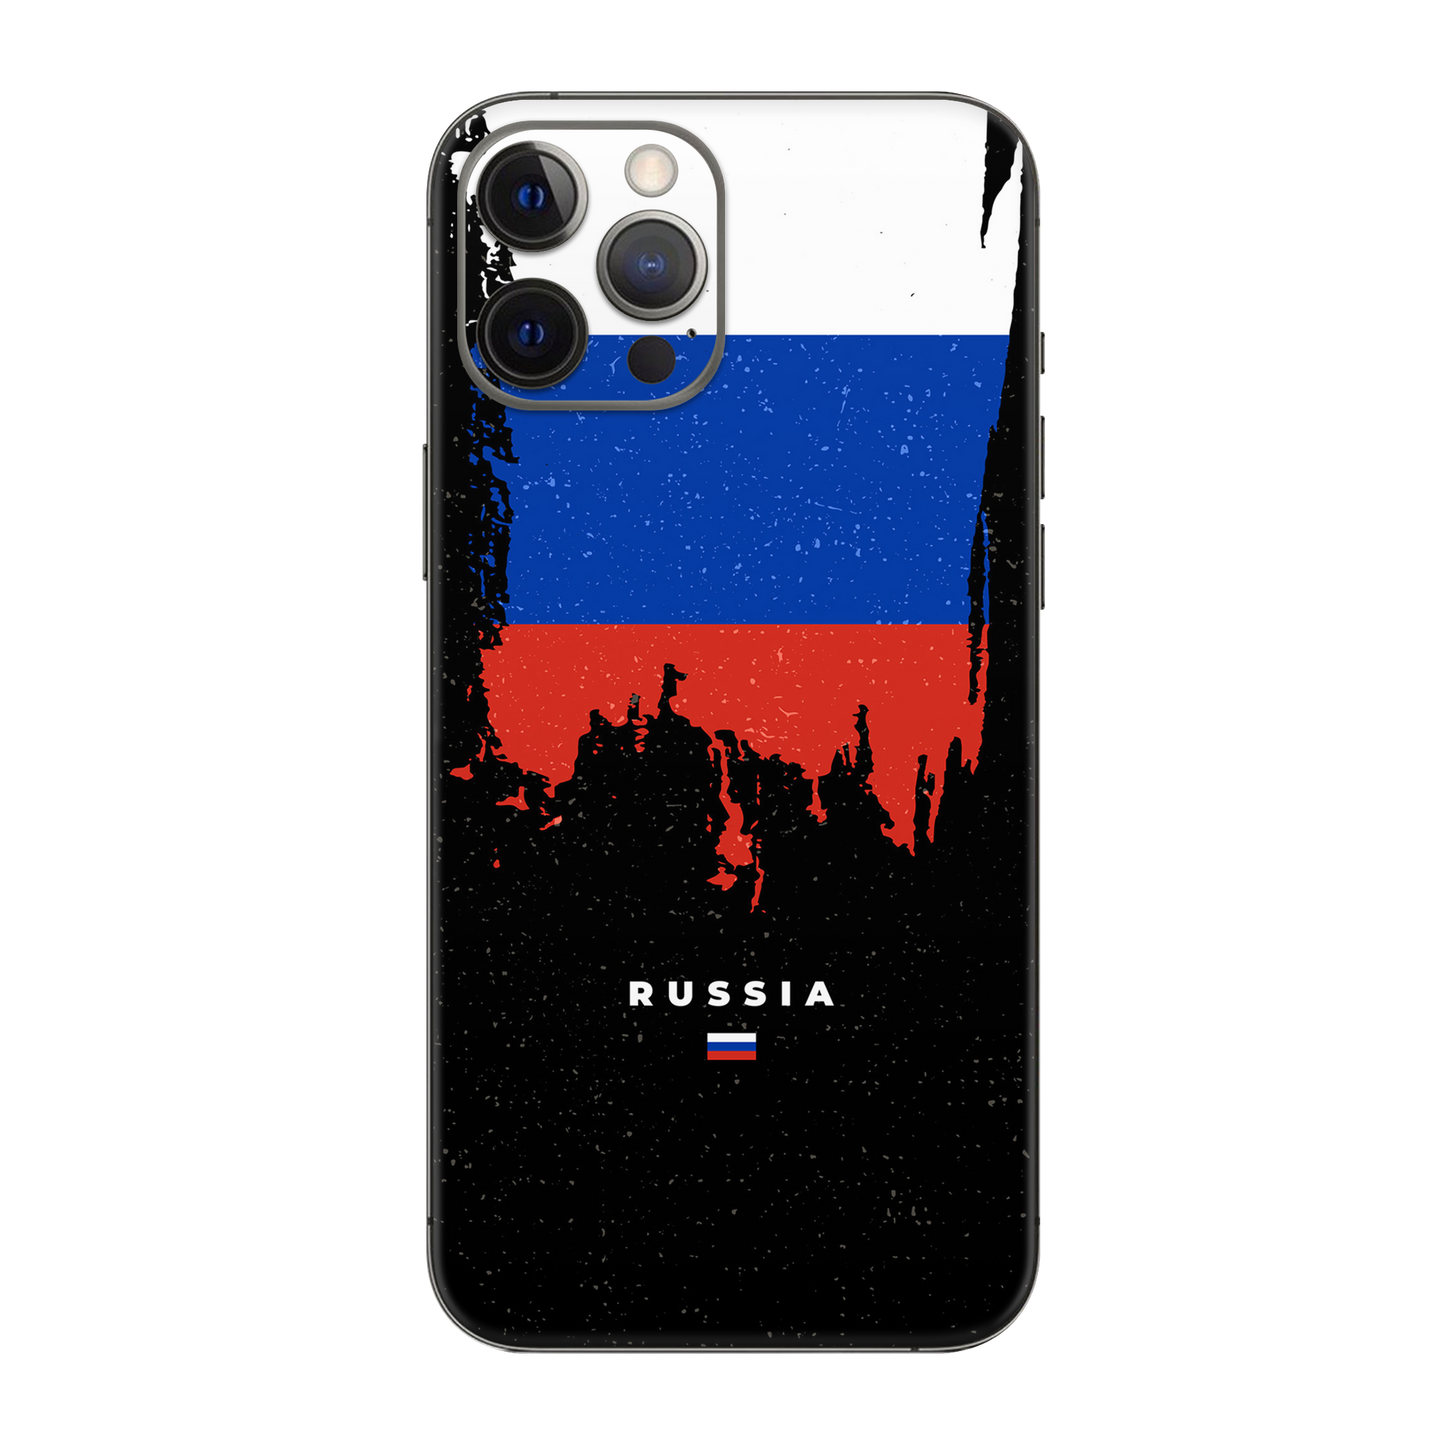 Backside Skin Russia - Für alle Smartphones bis 7 Zoll